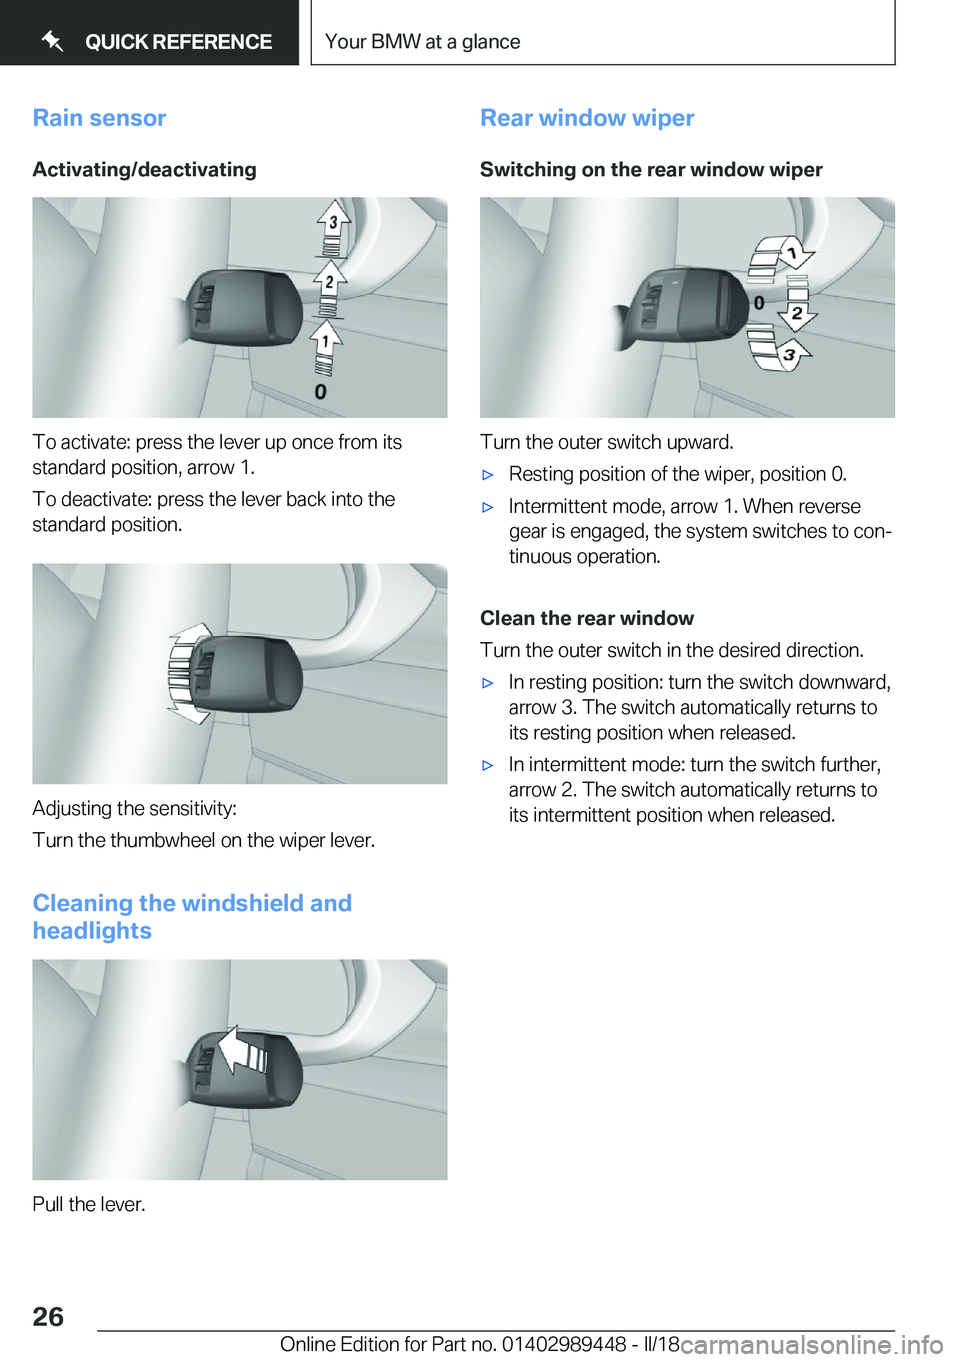 BMW X2 2018 Owners Manual �R�a�i�n��s�e�n�s�o�r�A�c�t�i�v�a�t�i�n�g�/�d�e�a�c�t�i�v�a�t�i�n�g
�T�o� �a�c�t�i�v�a�t�e�:� �p�r�e�s�s� �t�h�e� �l�e�v�e�r� �u�p� �o�n�c�e� �f�r�o�m� �i�t�s
�s�t�a�n�d�a�r�d� �p�o�s�i�t�i�o�n�,� �a